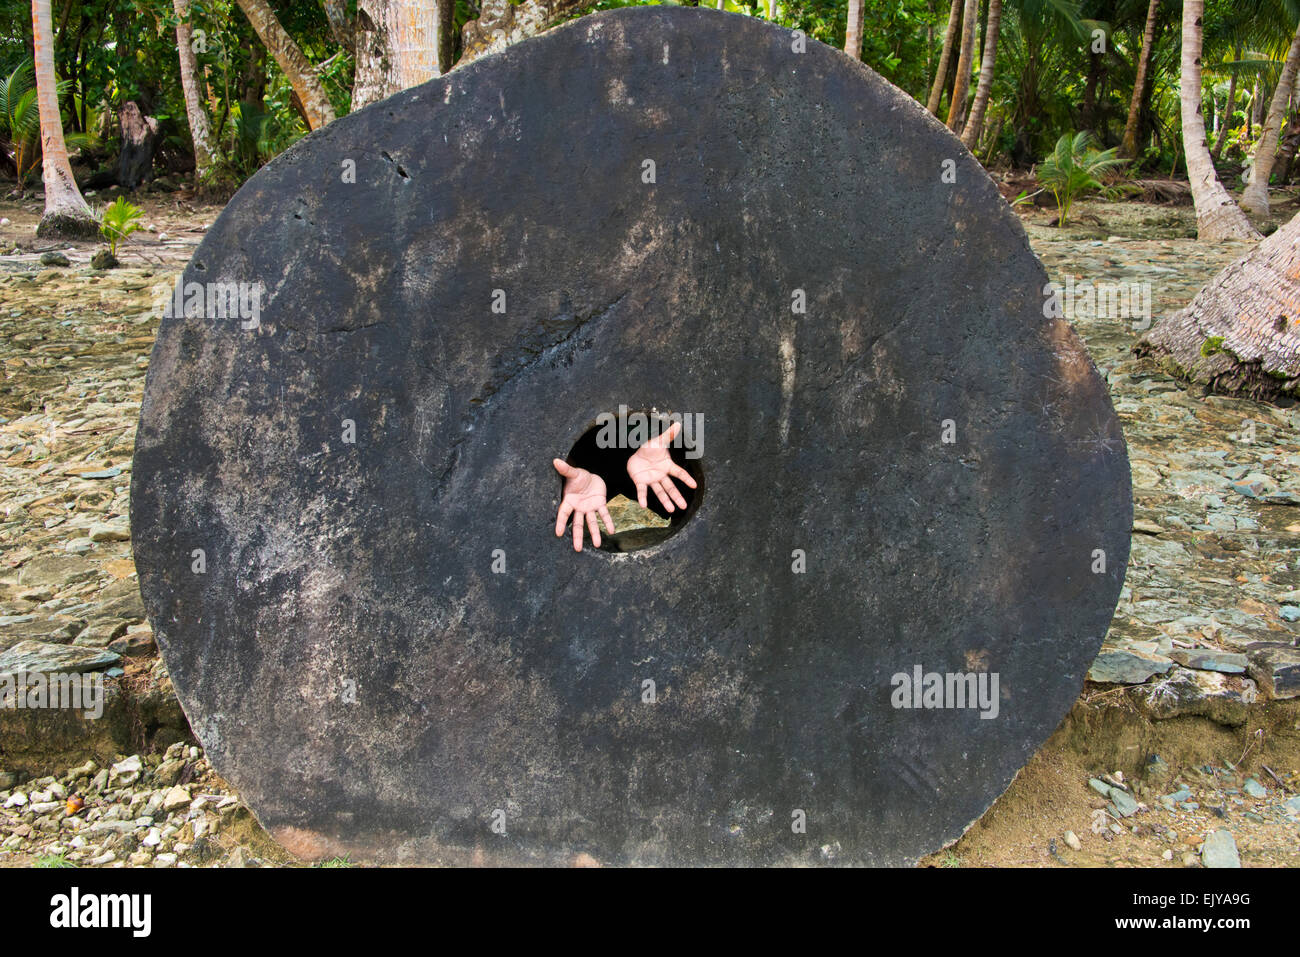 Stein-Geld (Rai Steinen) auf der Bank, Hände Verlängerung aus dem Loch in der Scheibe, Yap-Insel, Föderierte Staaten von Mikronesien Stockfoto